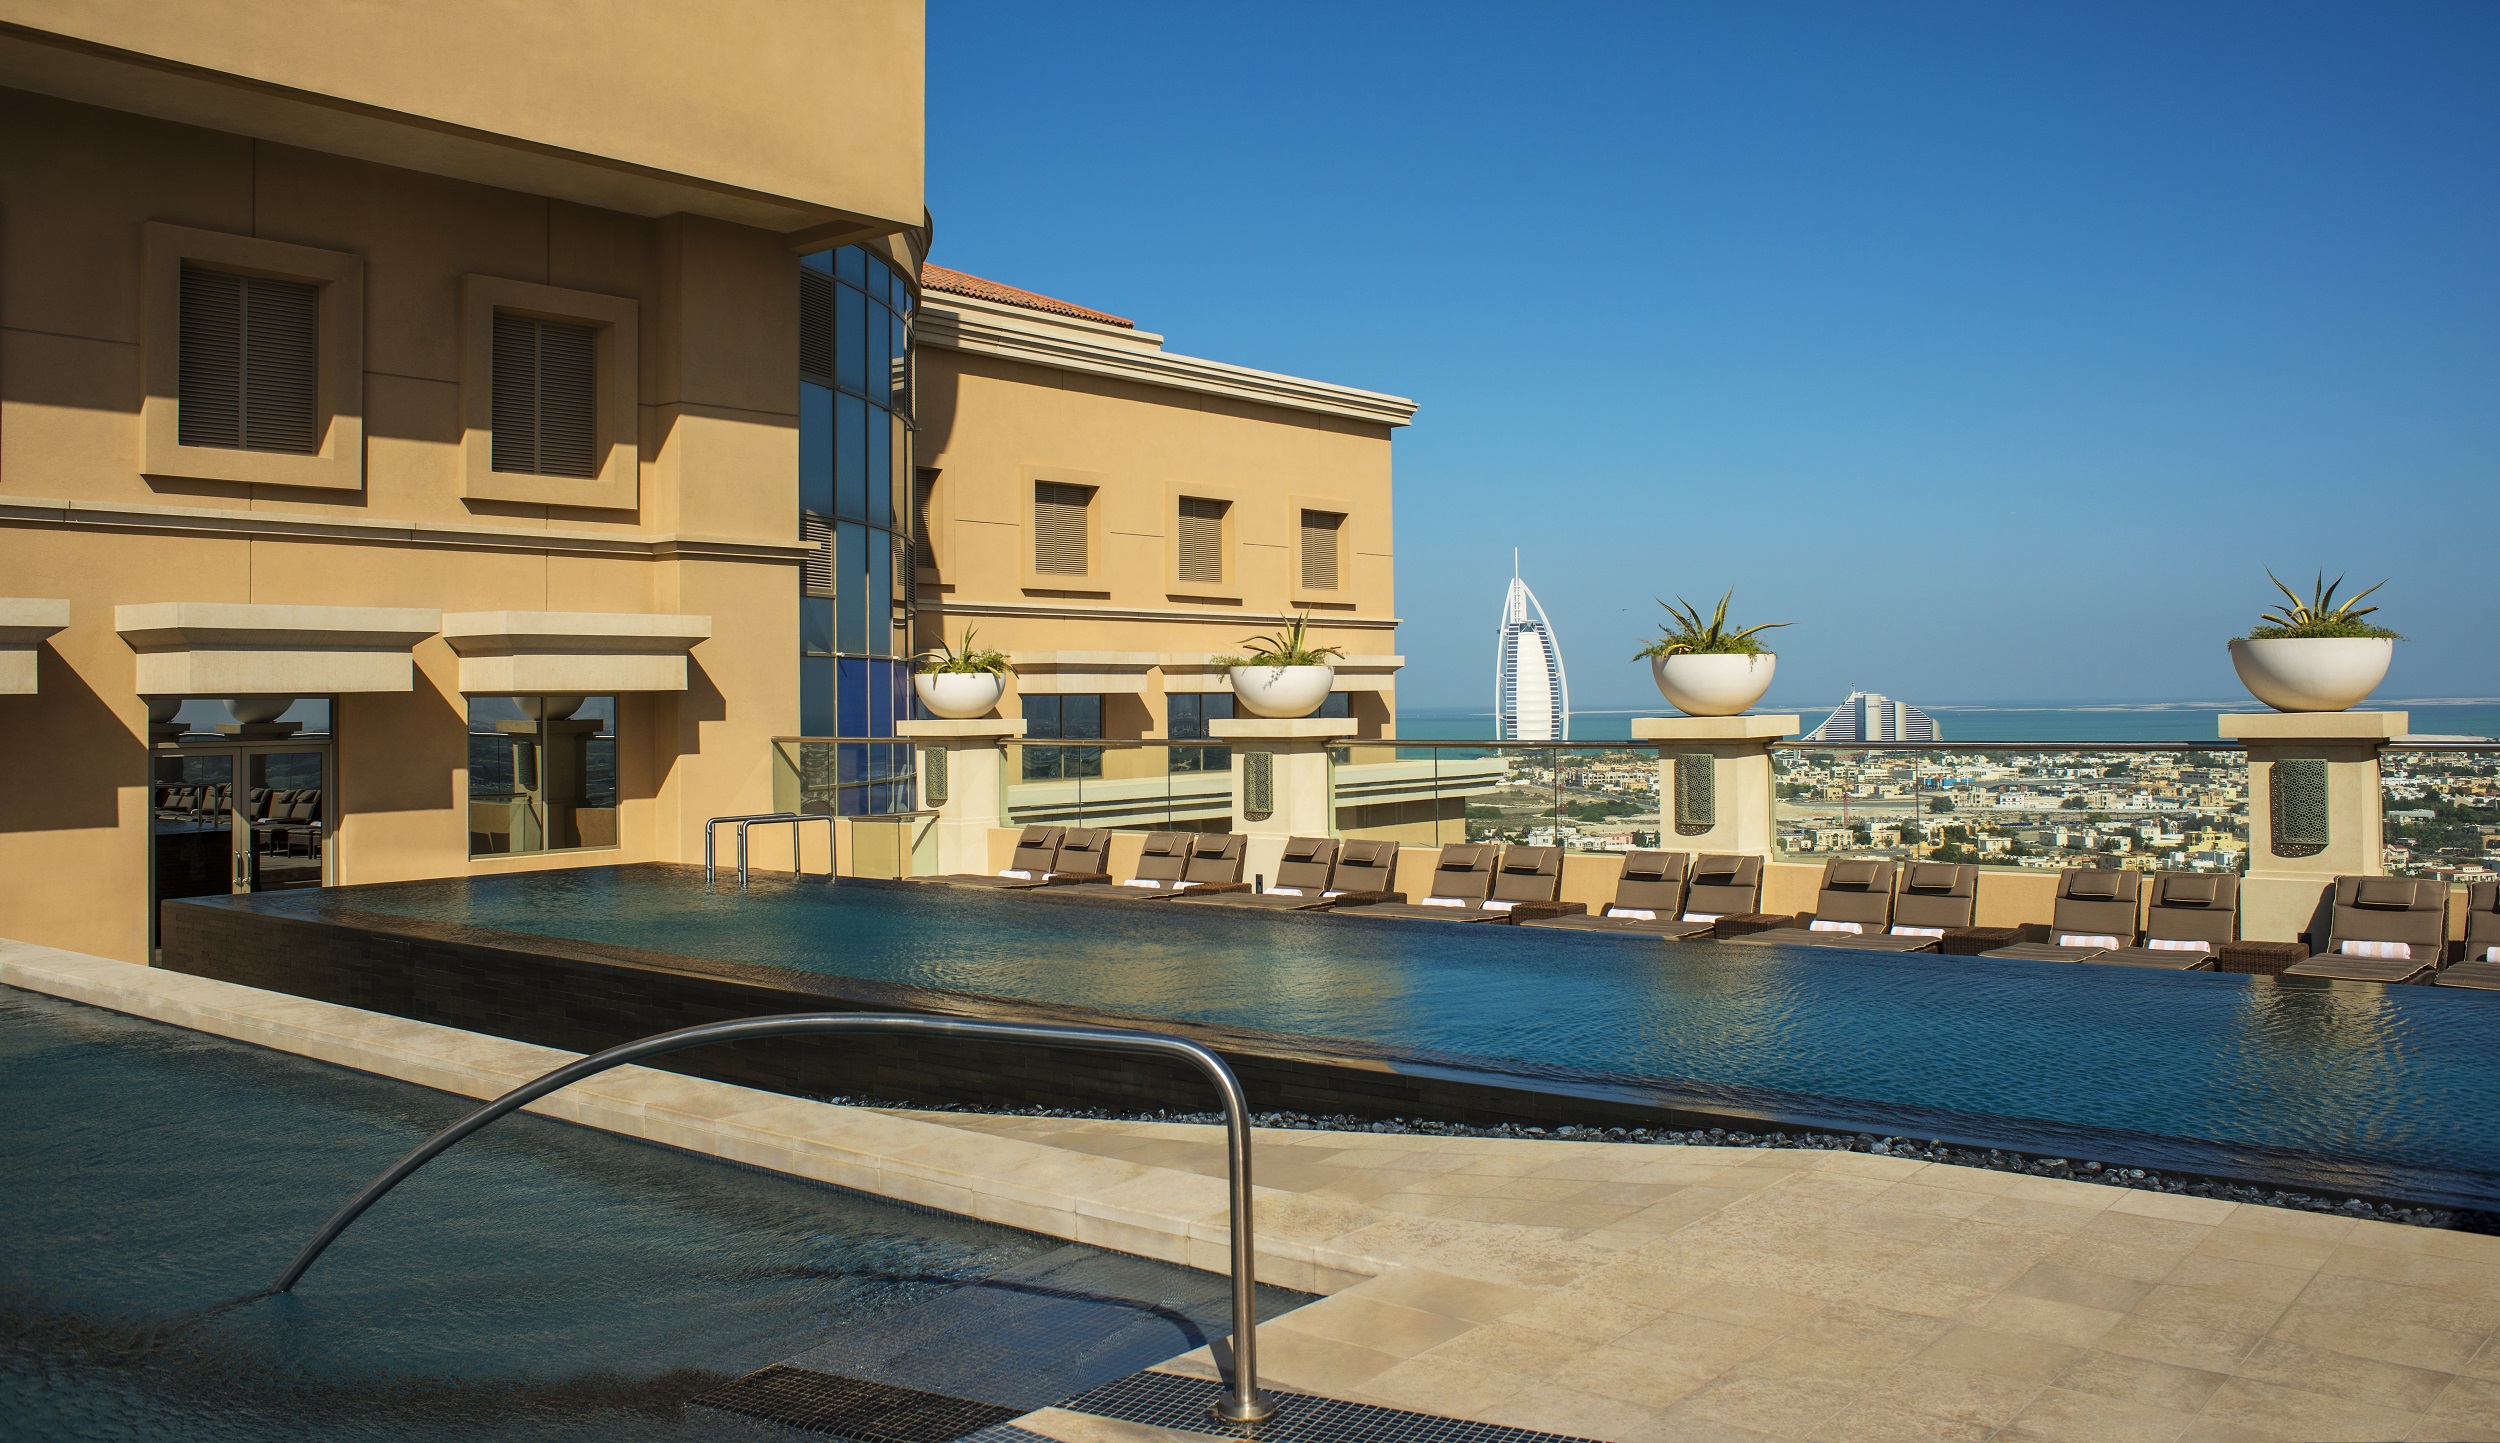 فندق شيراتون مول الإمارات تطلق باقة إقامة جديدة زاخرة بالمزايا والمفاجآت